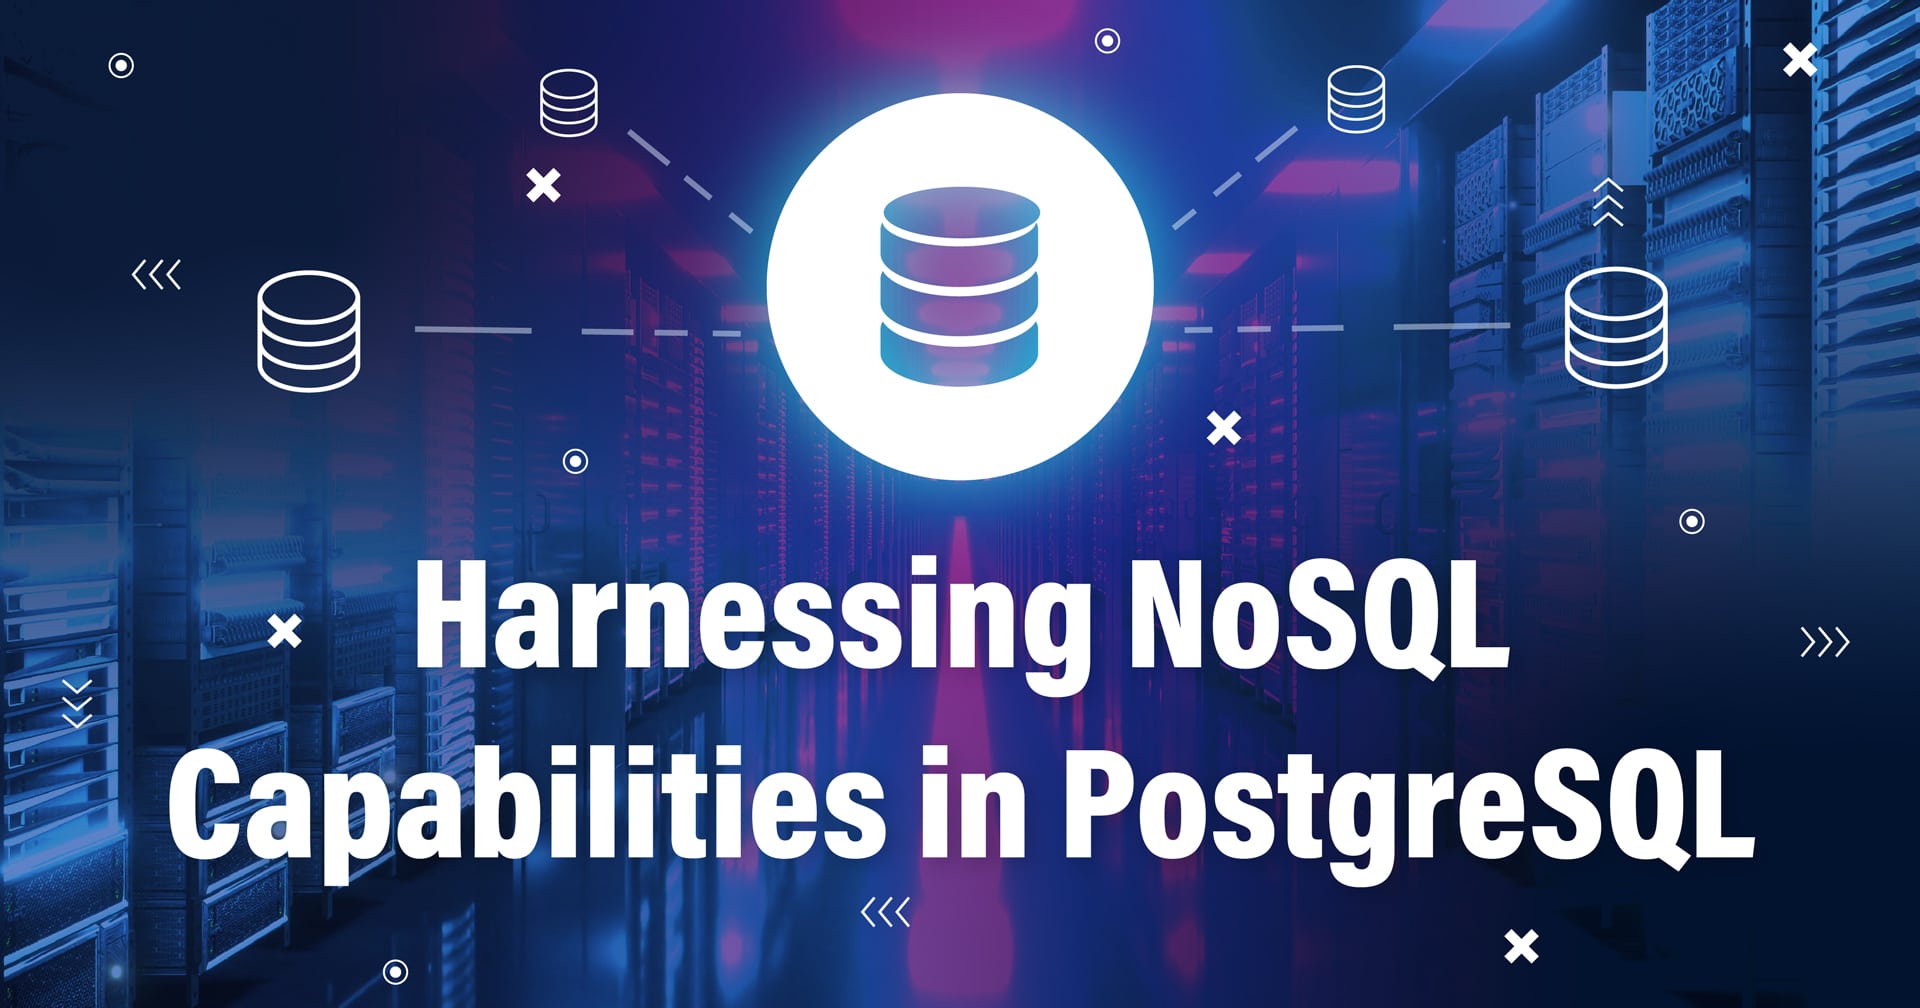 Immagine con il simbolo di un database collegato ad altri database e il testo Harnessing NoSQL Capabilities in PostgreSQL in basso.